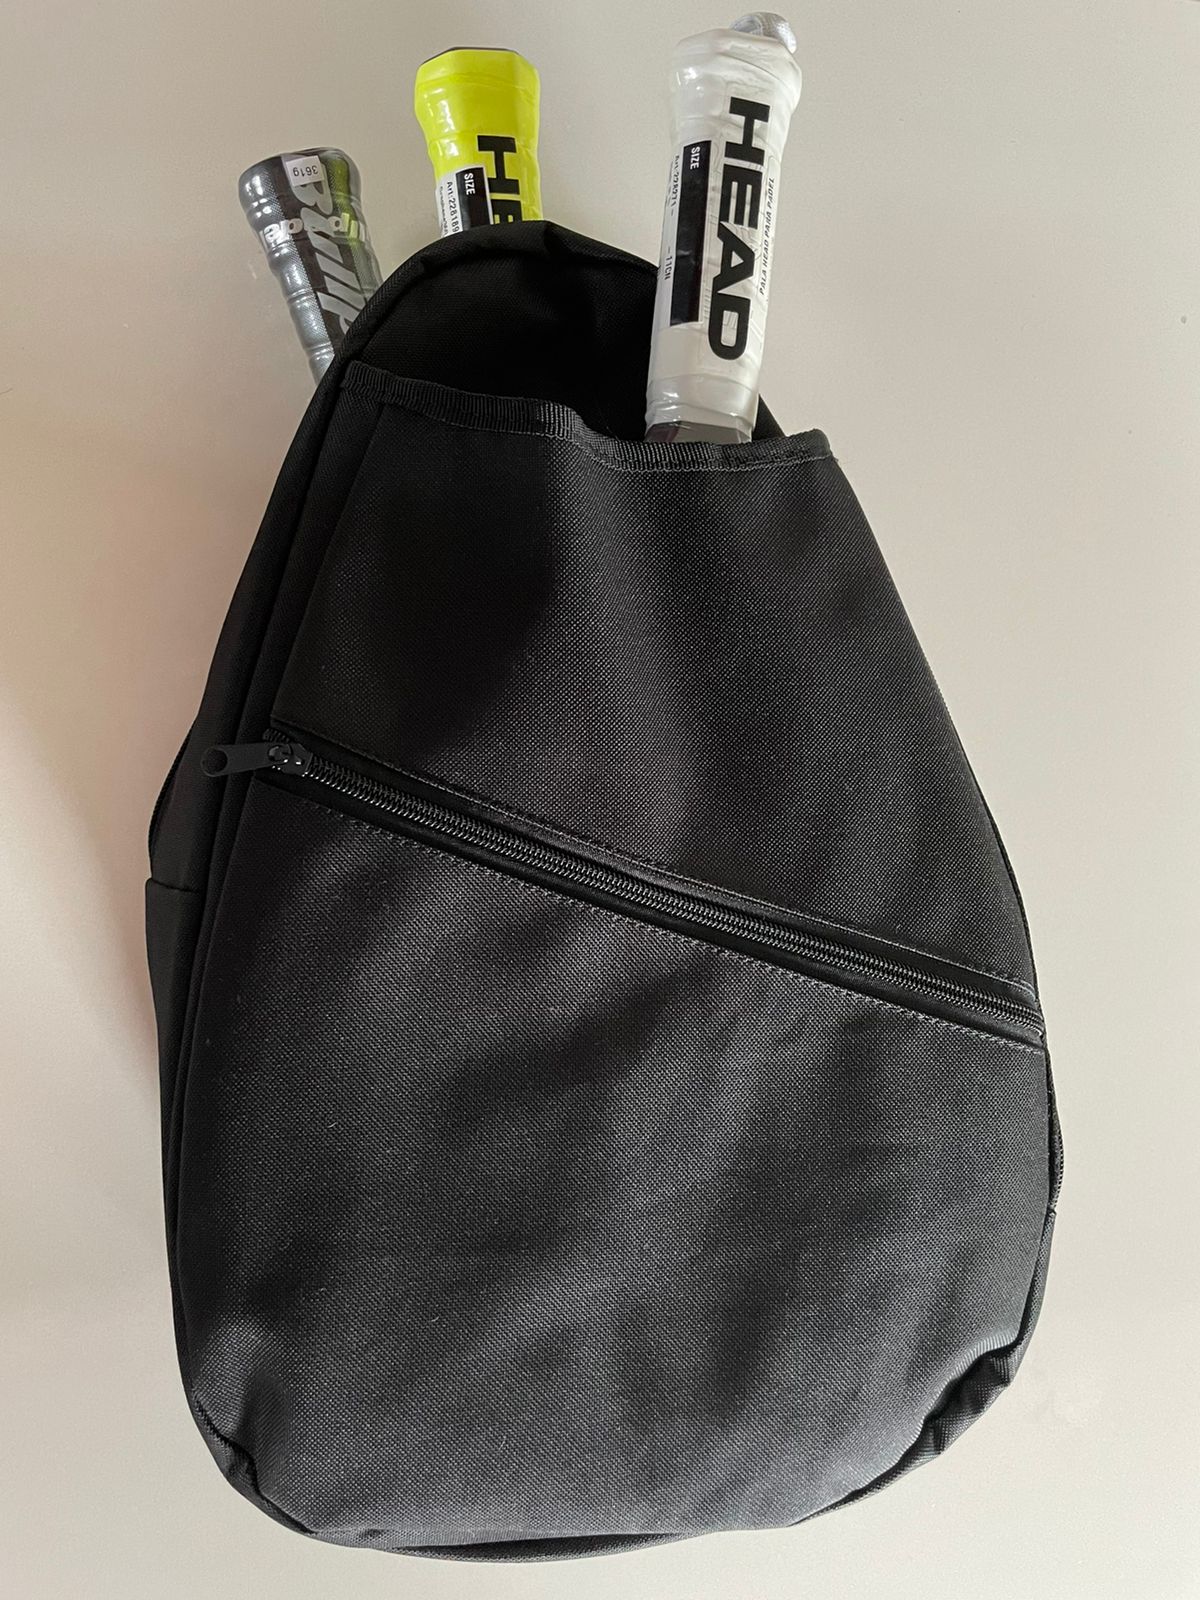 Elite Backpack Para Padel 2P (Varios Colores) – PADELWIN